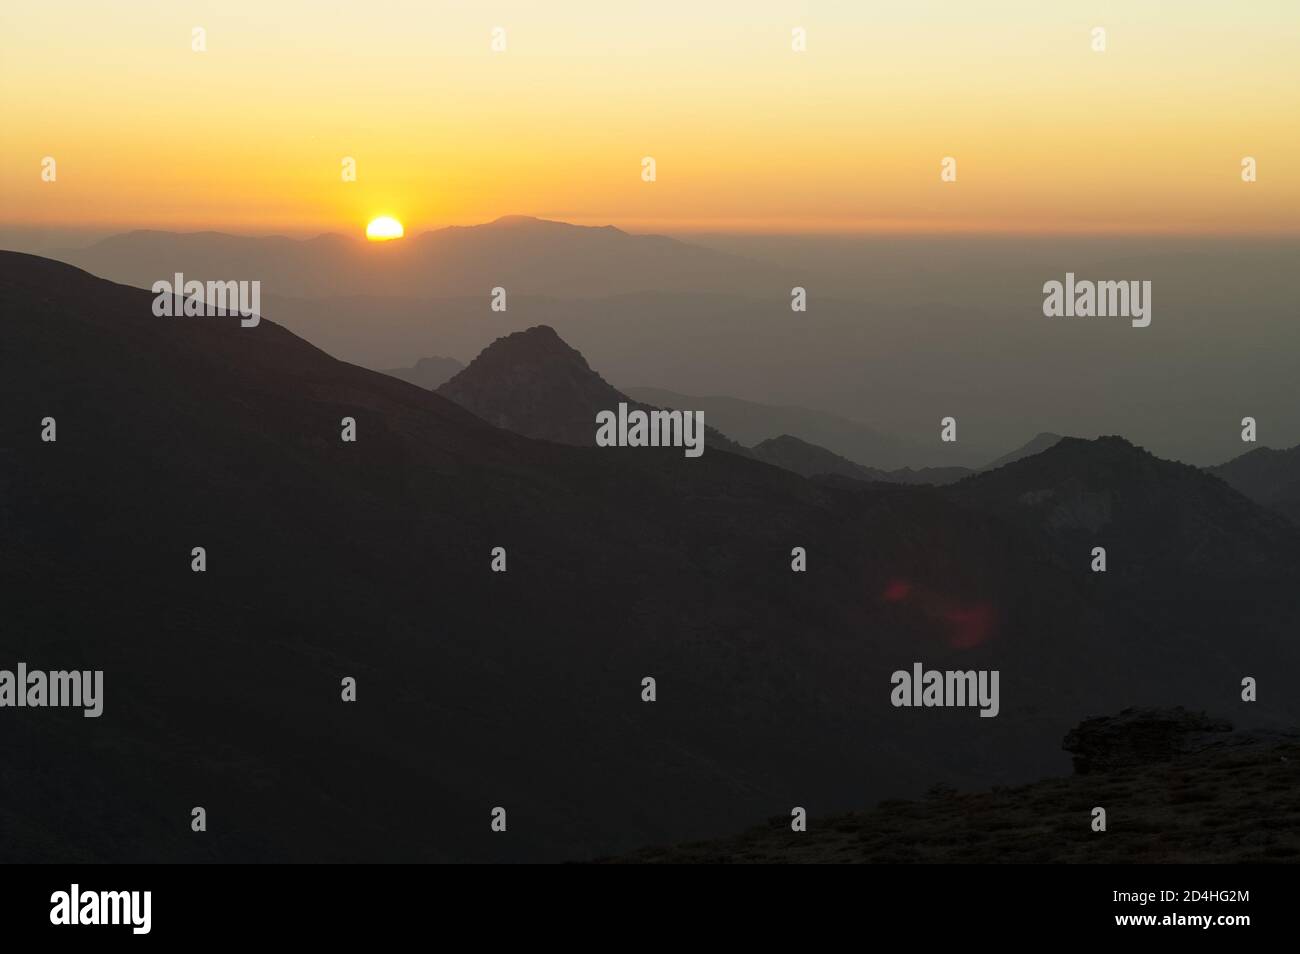 Sierra Nevada, España, Hiszpania, Spain, Spanien; Colorful sunset over the mountain tops. Bunter Sonnenuntergang über den Berggipfeln. 在山頂上的日落。 Stock Photo